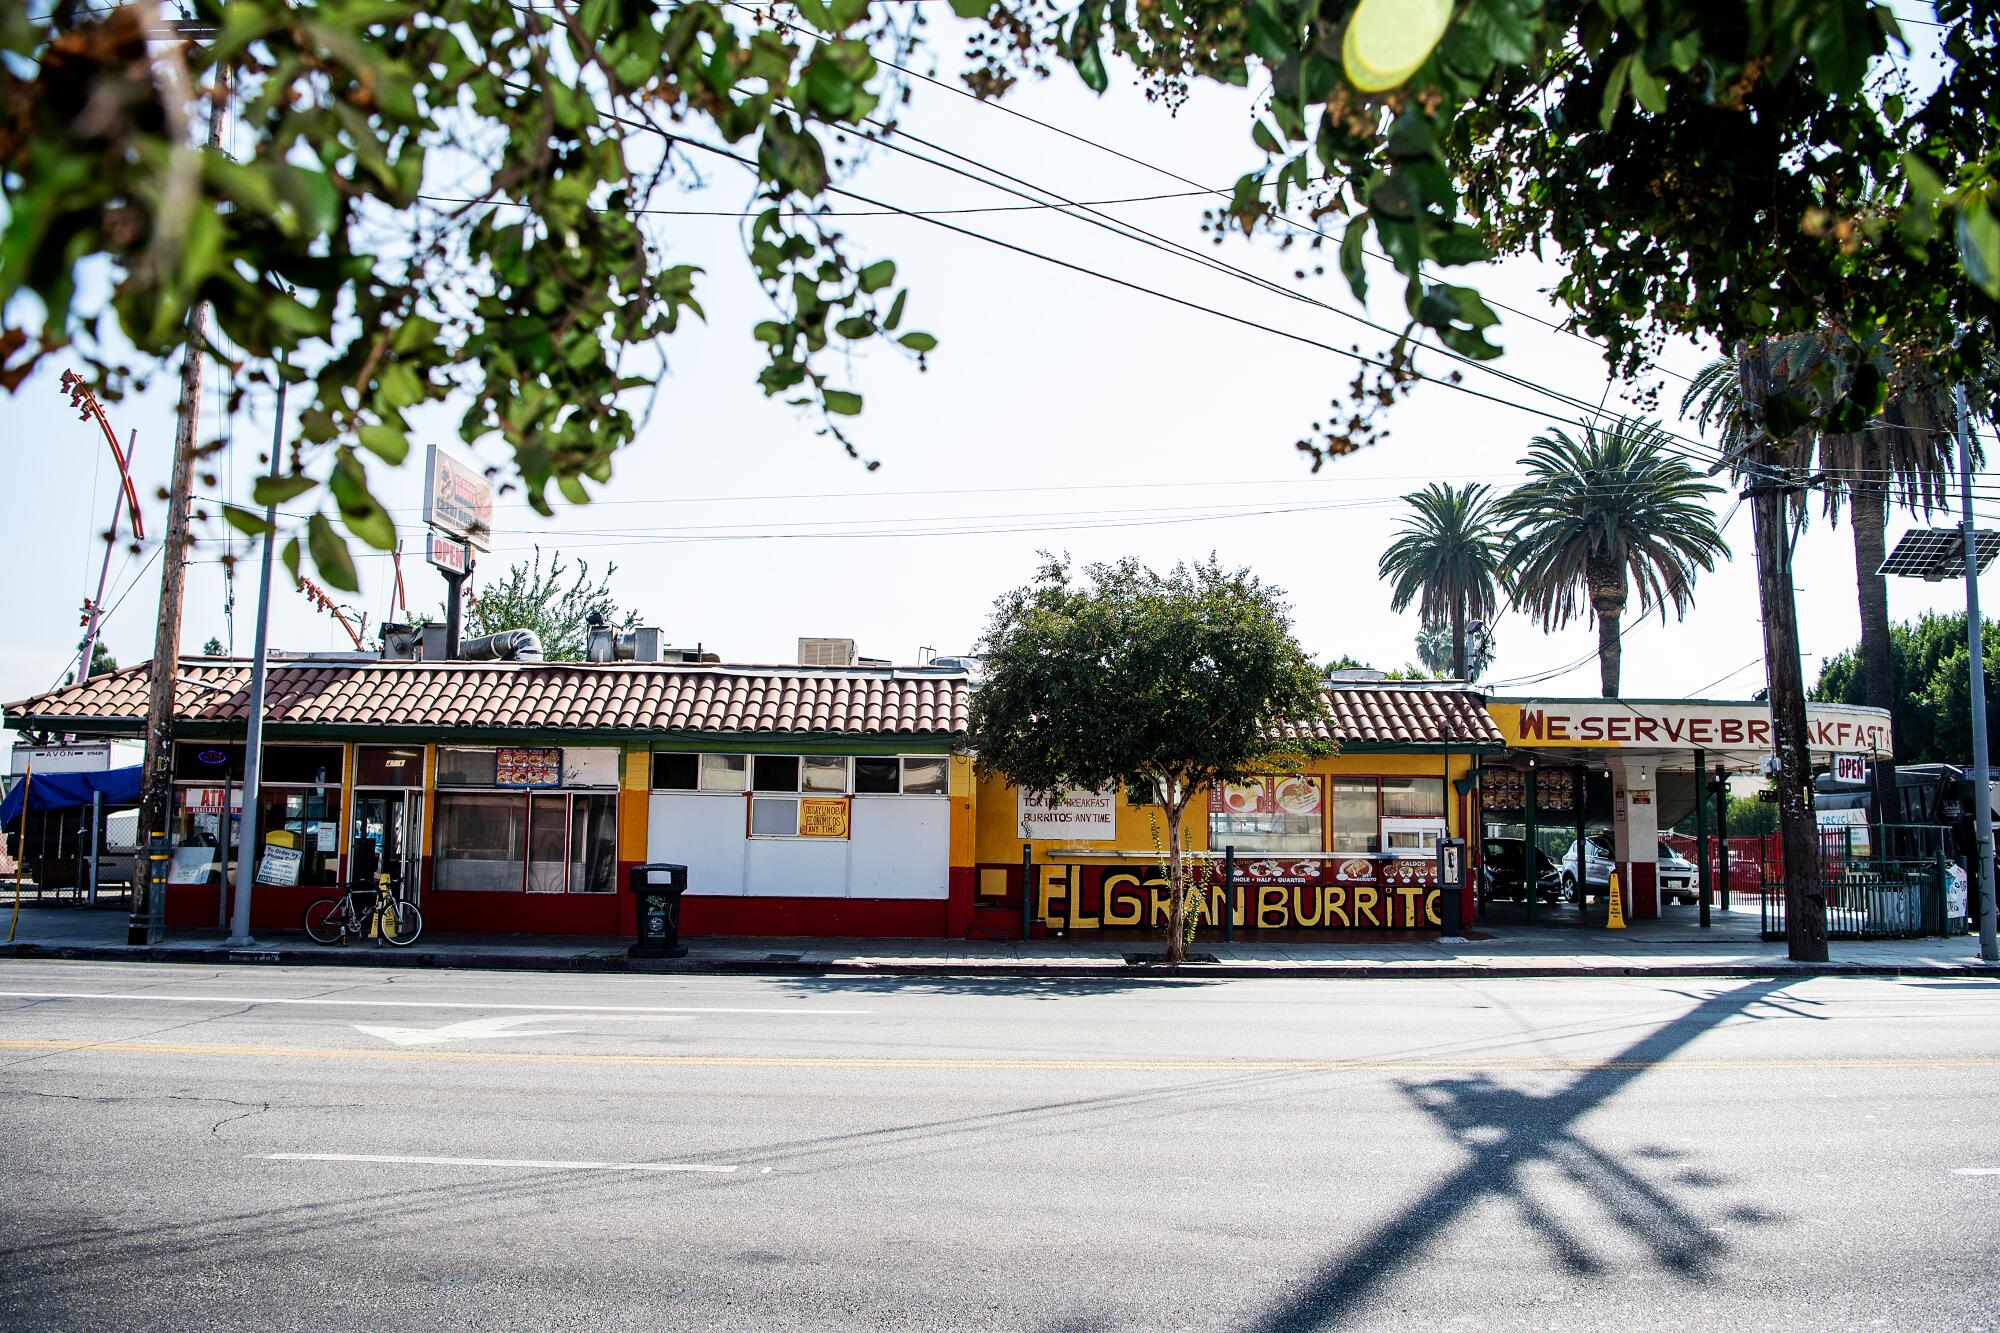 El Gran Burrito in East Hollywood